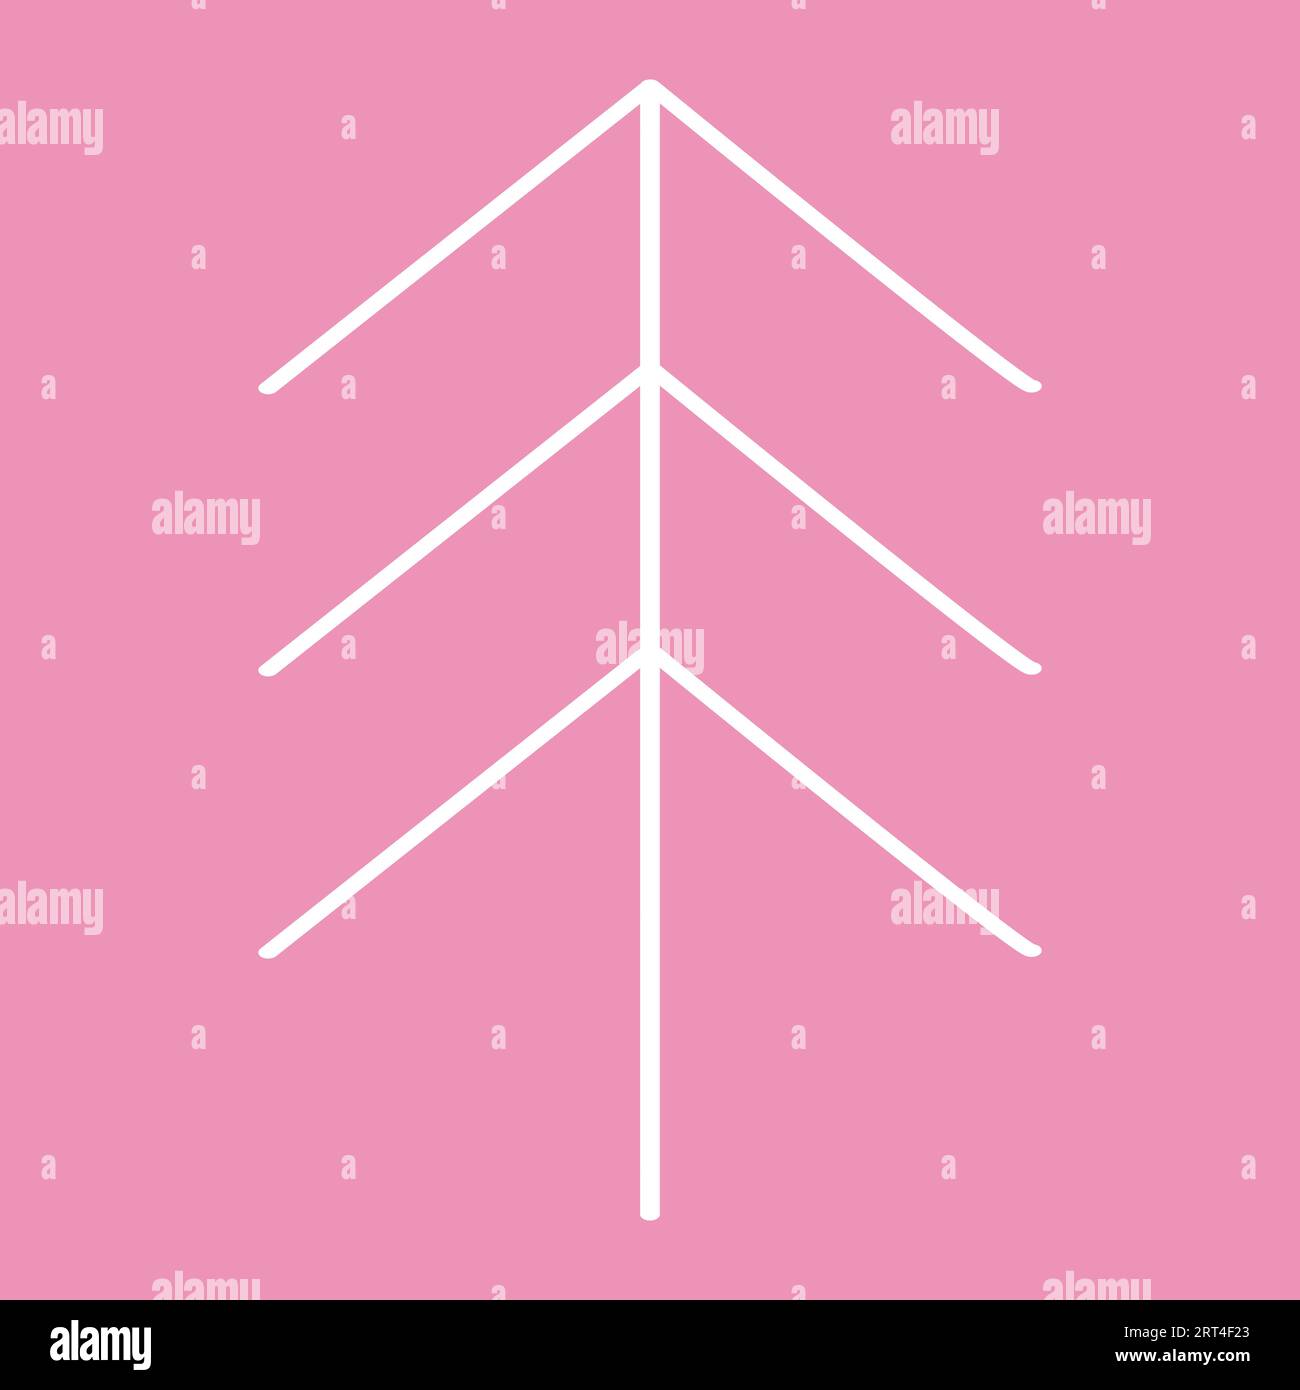 Vereinfachte Weihnachtsbaum- oder Kiefernsilhouette auf rosa, Winterferien Designelement, Vektorillustration Stock Vektor